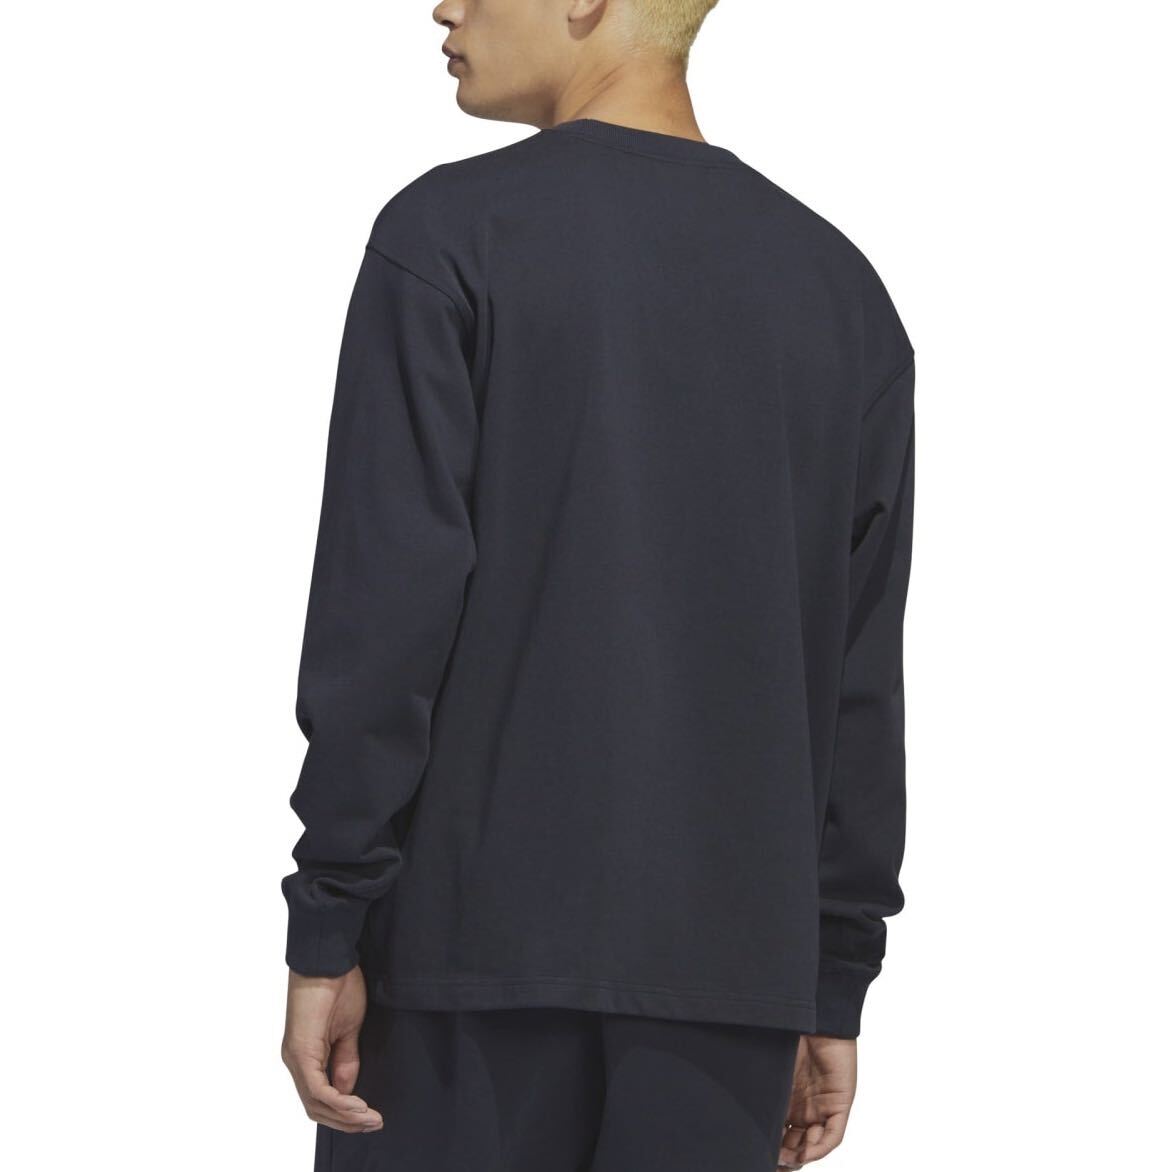  новый товар не использовался fareruadidas футболка с длинным рукавом [XL]Humanracehyu- man гонки long T темно-синий PW Adidas 3437 Pharrell длинный рукав 